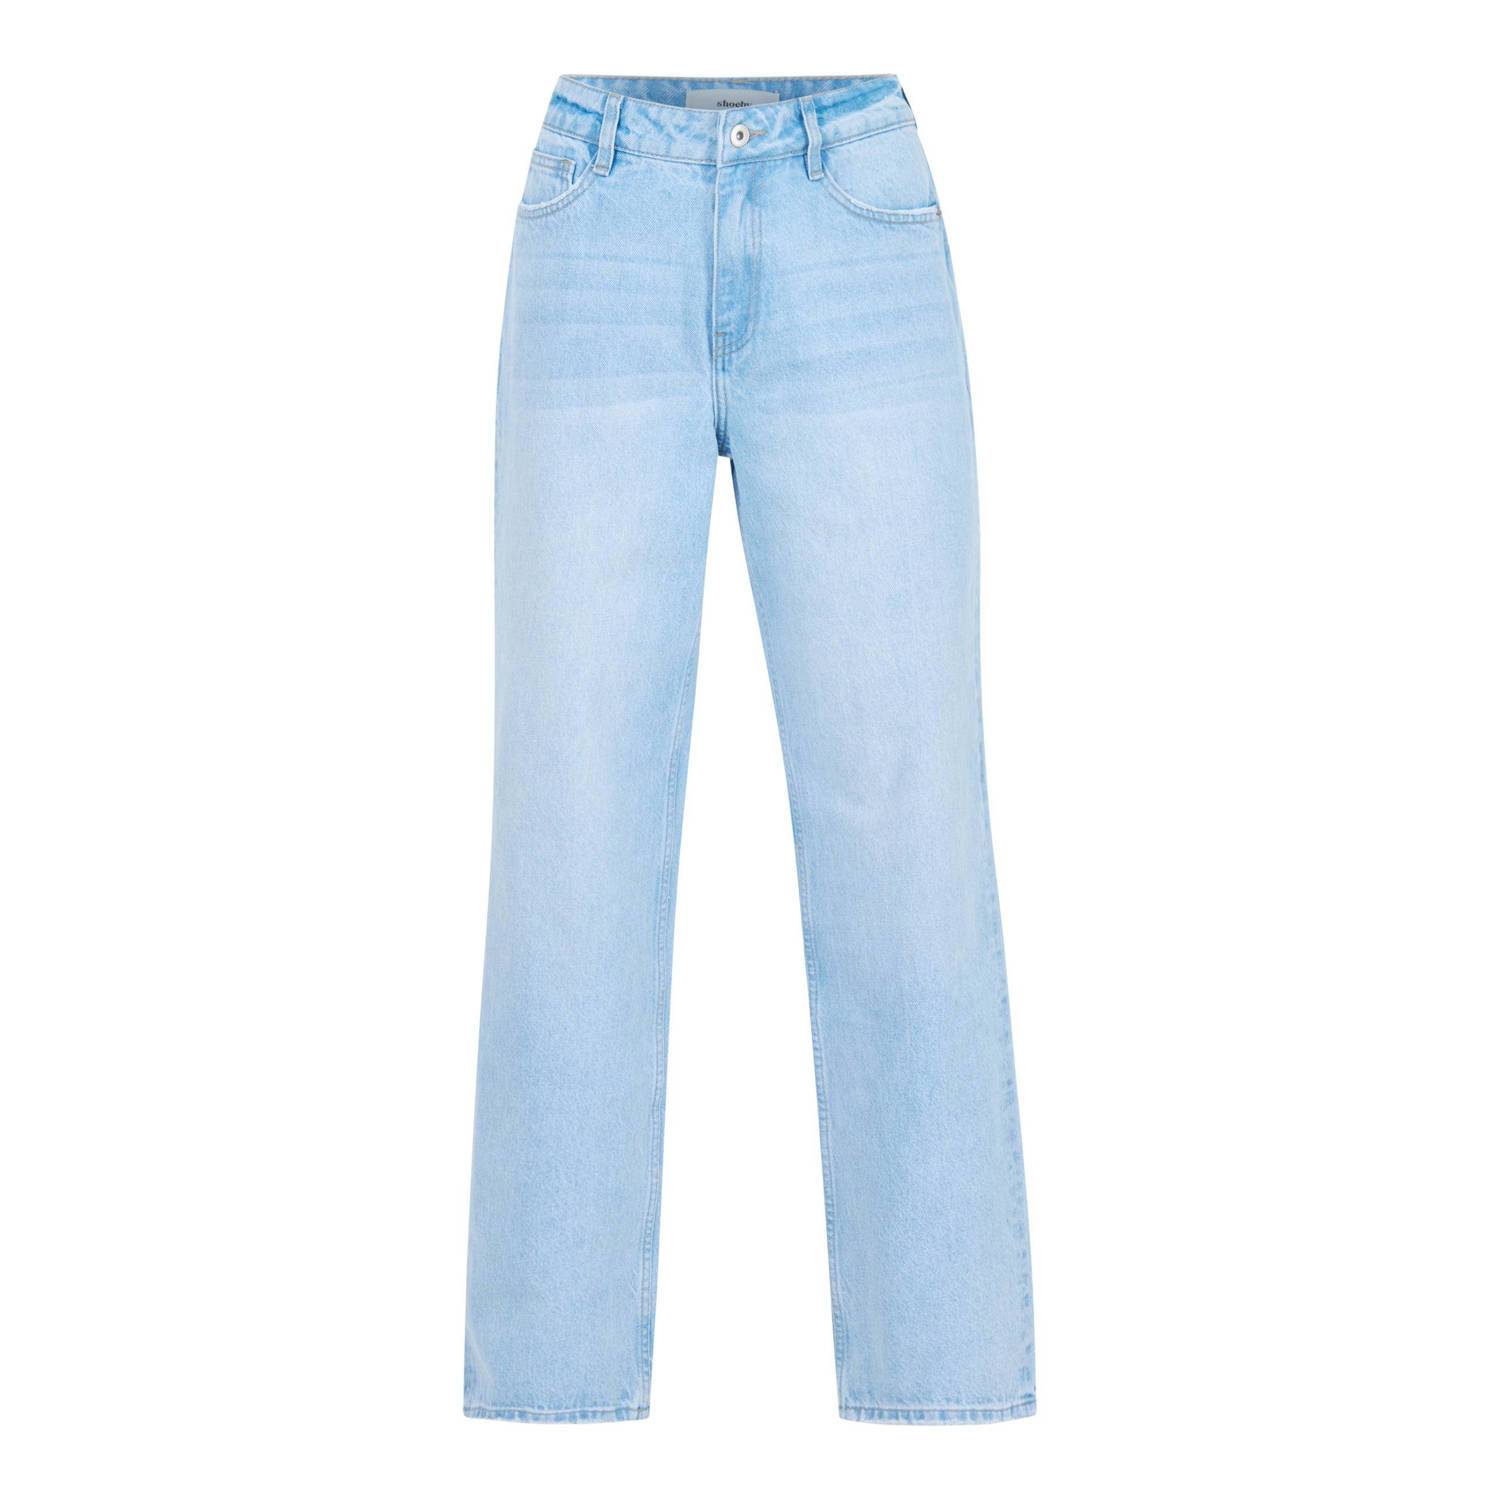 Shoeby high waist loose jeans light blue denim